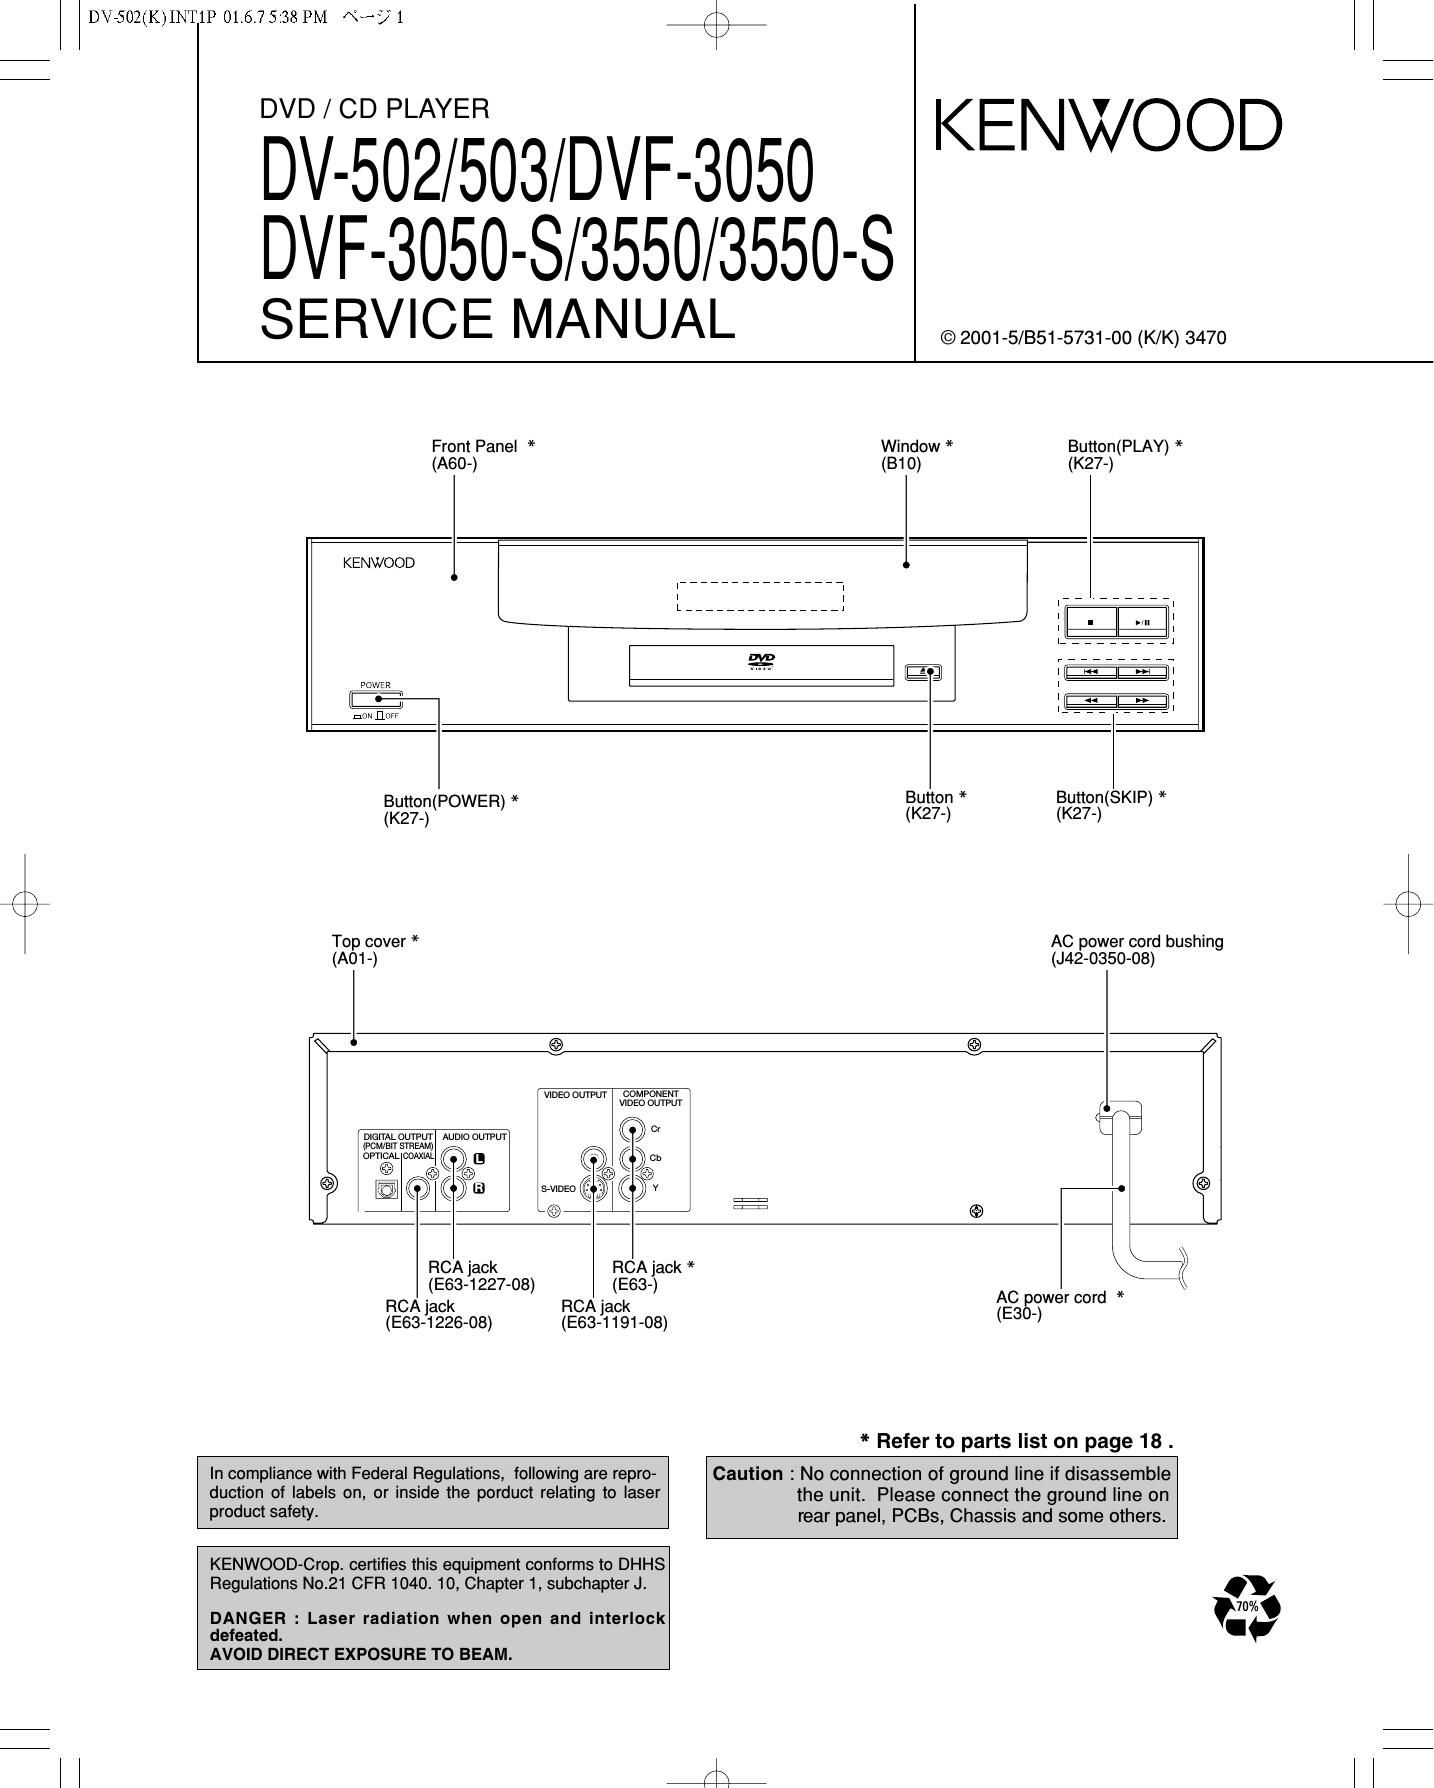 Kenwood DVF 3550 Service Manual